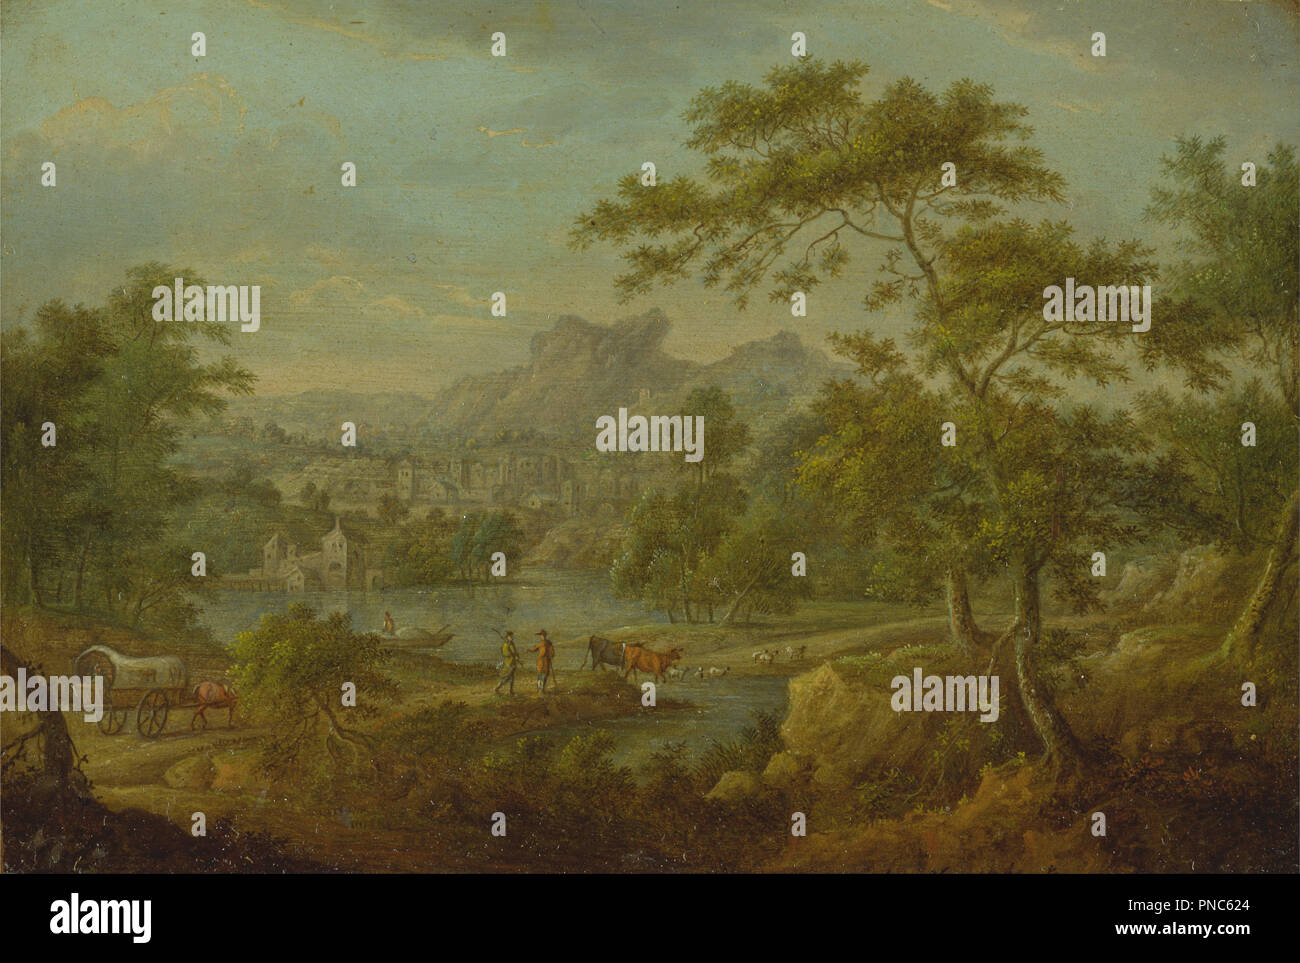 Un paysage imaginaire avec un chariot et une vue lointaine d'une ville. Date/Période : Ca. 1749. La peinture. Huile sur cuivre. Hauteur : 124 mm (4,88 in) ; Largeur : 183 mm (7,20 in). Auteur : Thomas Smith de Derby. Banque D'Images